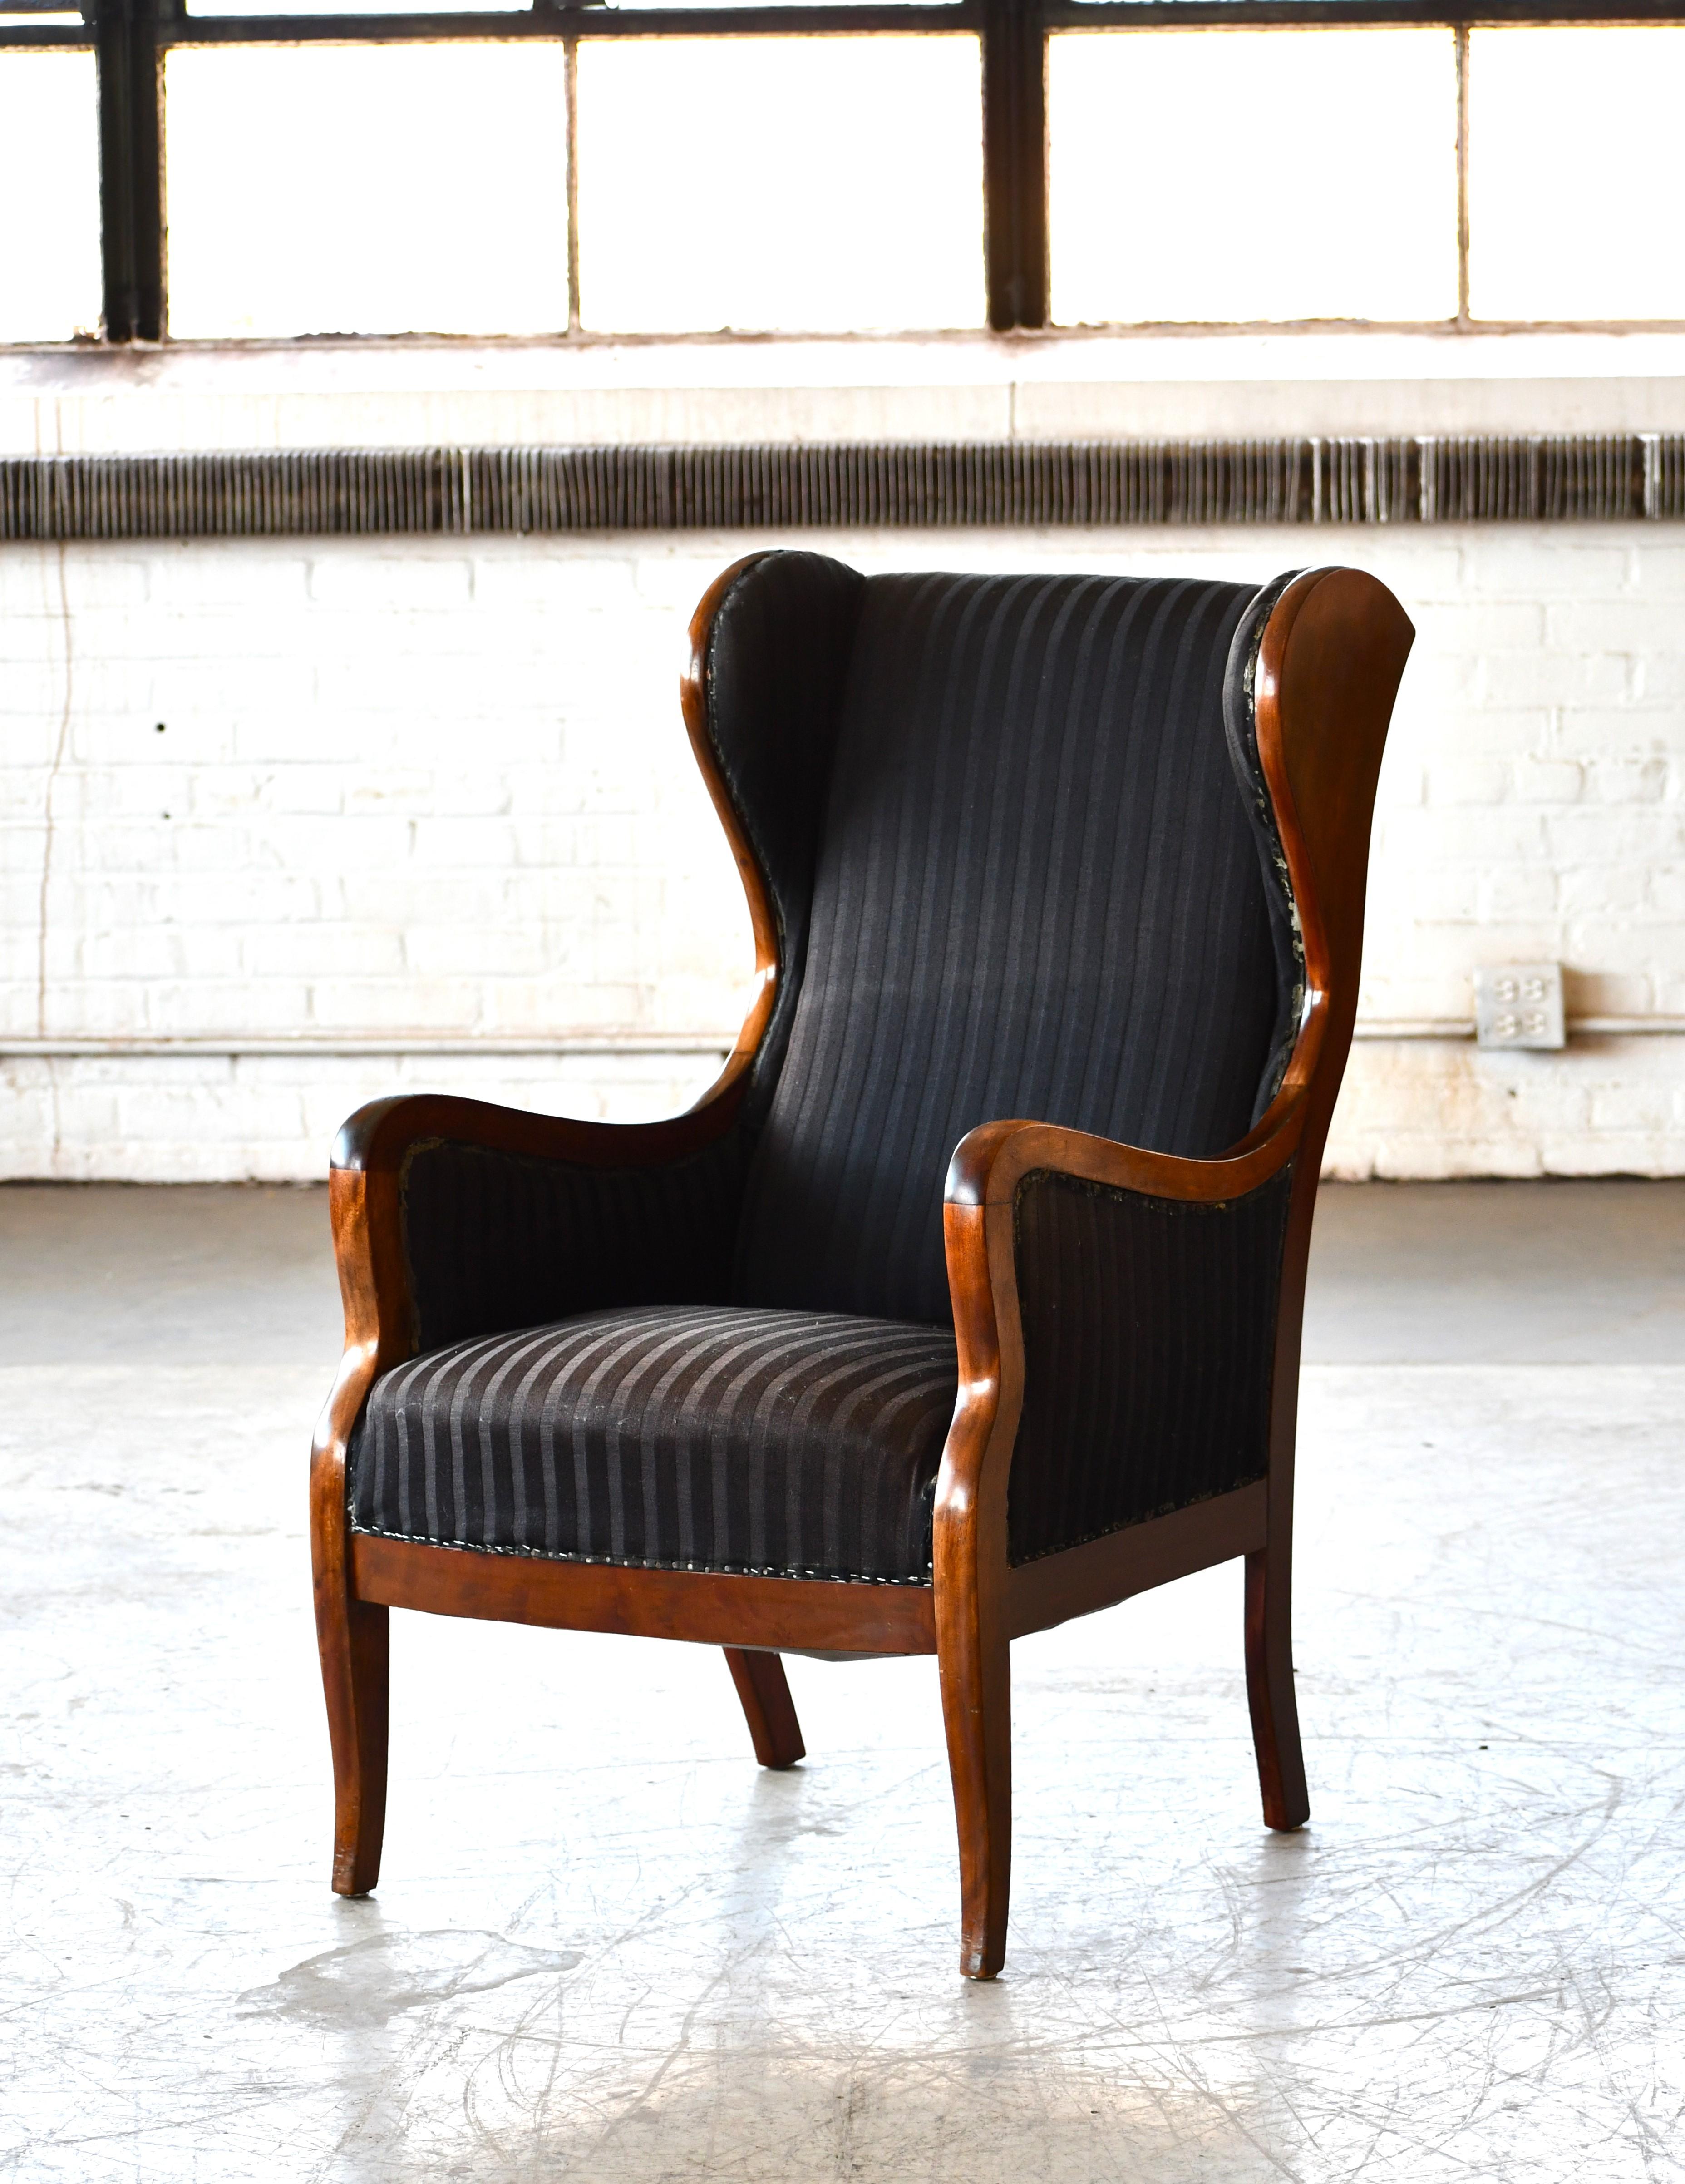 Magnifique chaise à oreilles classique des années 1930-1940 produite par le maître ébéniste Frits Henningsen, Danemark. Glissière en bois de hêtre teinté acajou. Un design très élégant qui s'intègre parfaitement à tout design moderne et qui